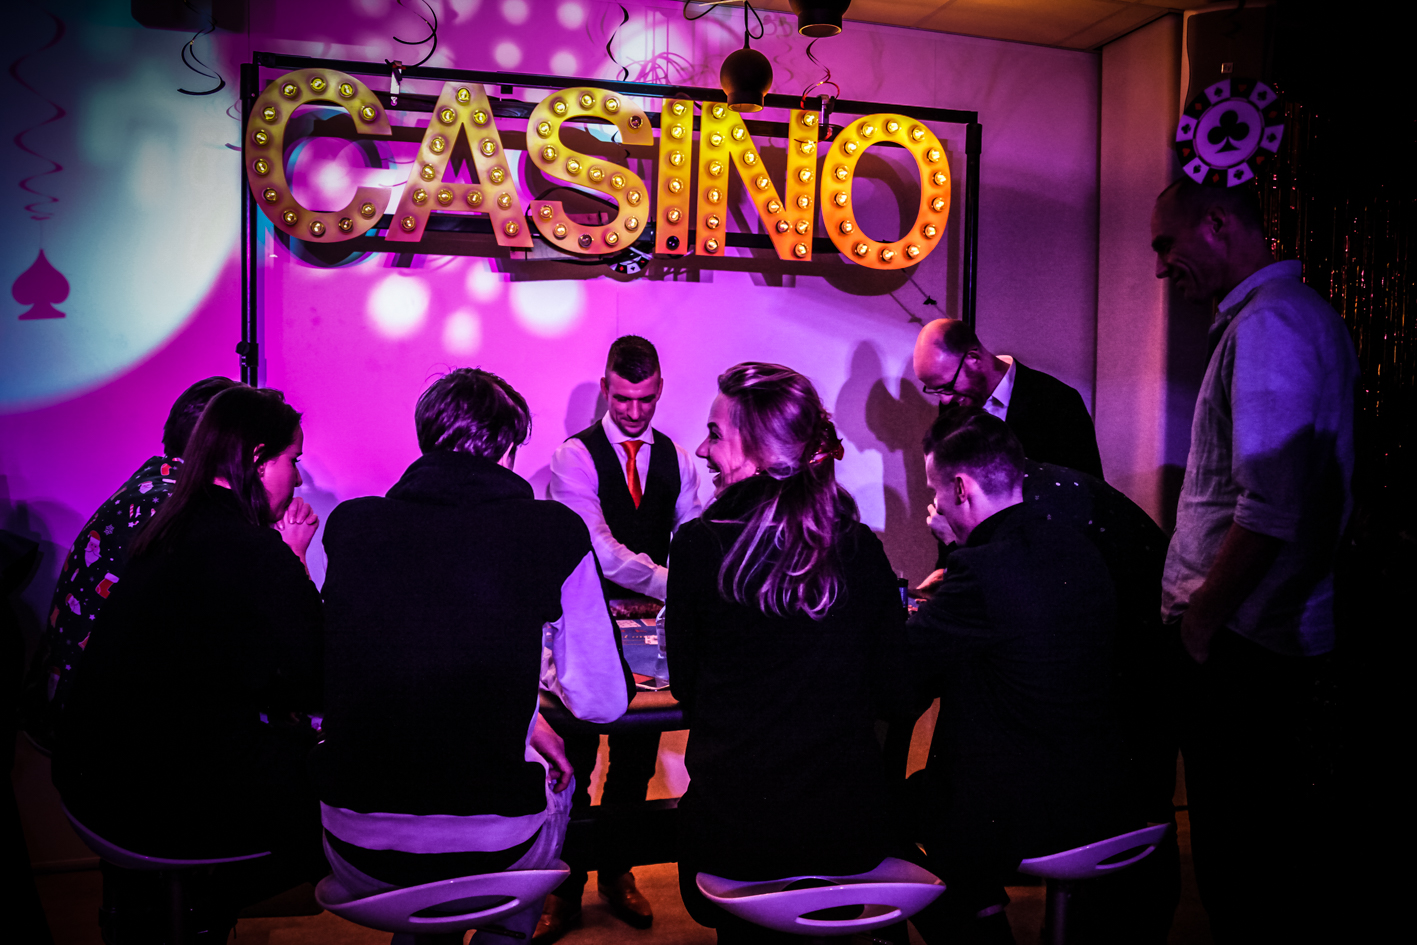 Indicia Casinofeest, StudioMT